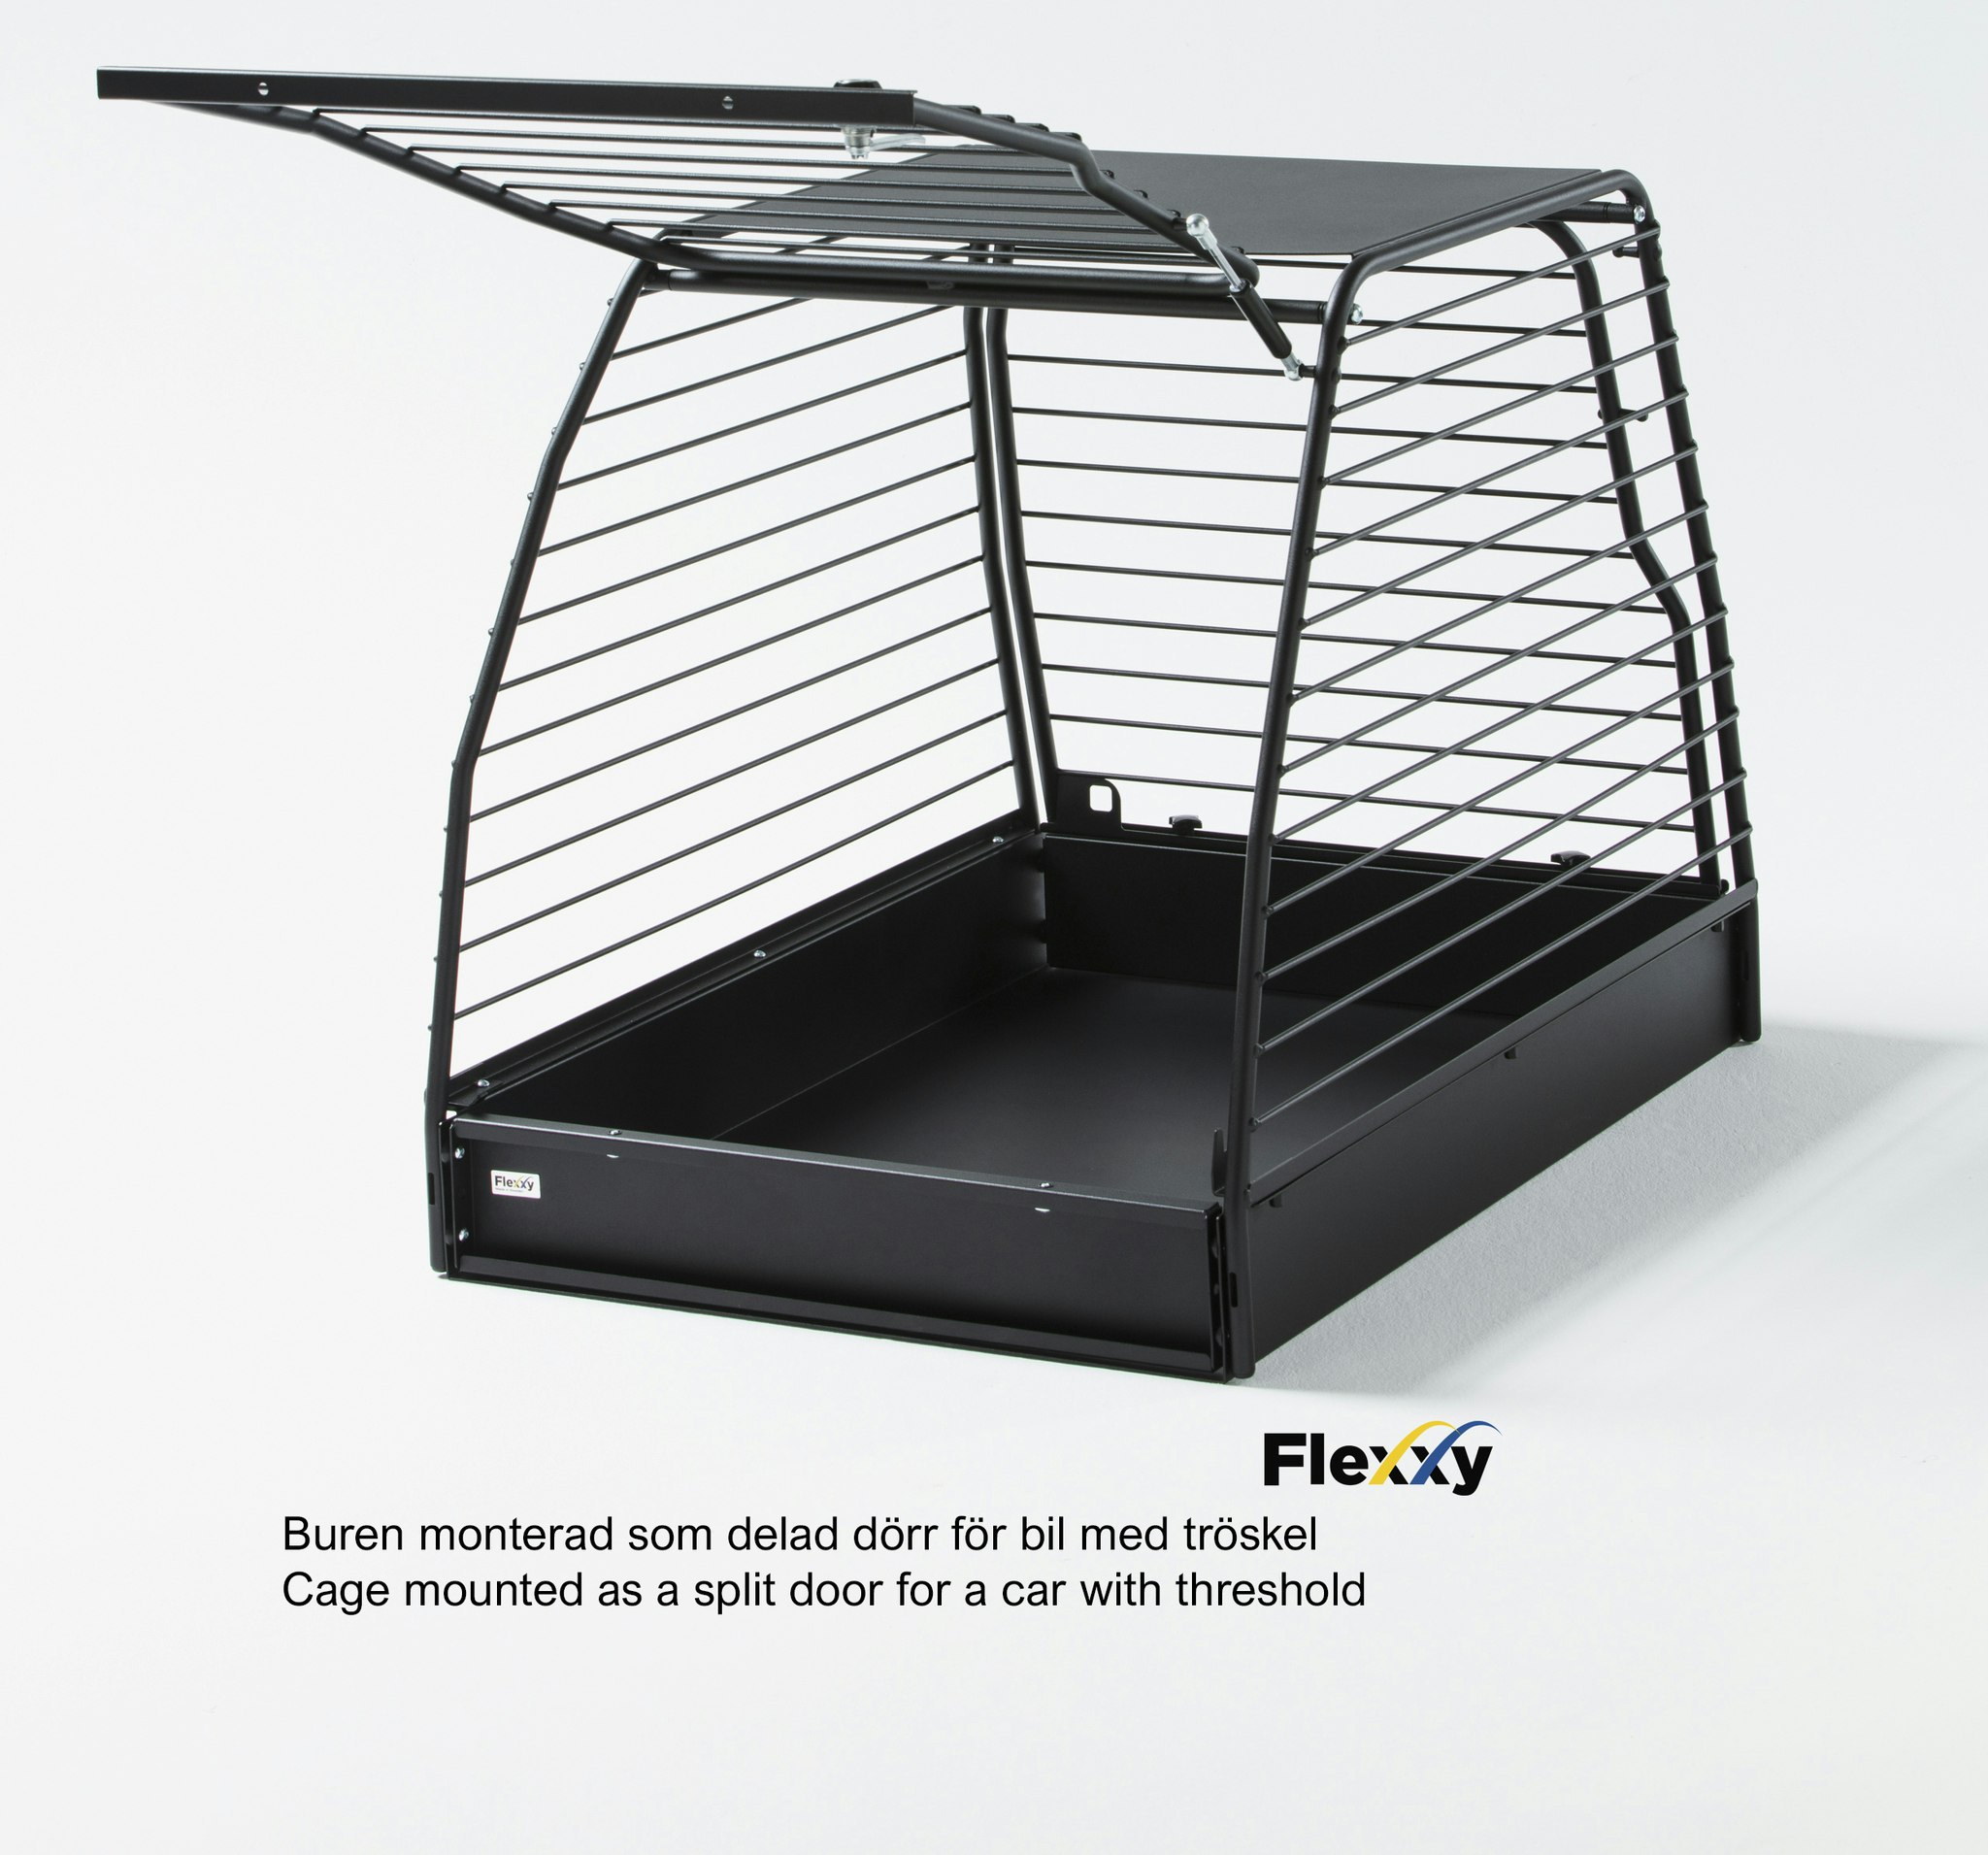 Flexxy dog cage Large - Flexxy Swedish manufactured crash-proof dog cages